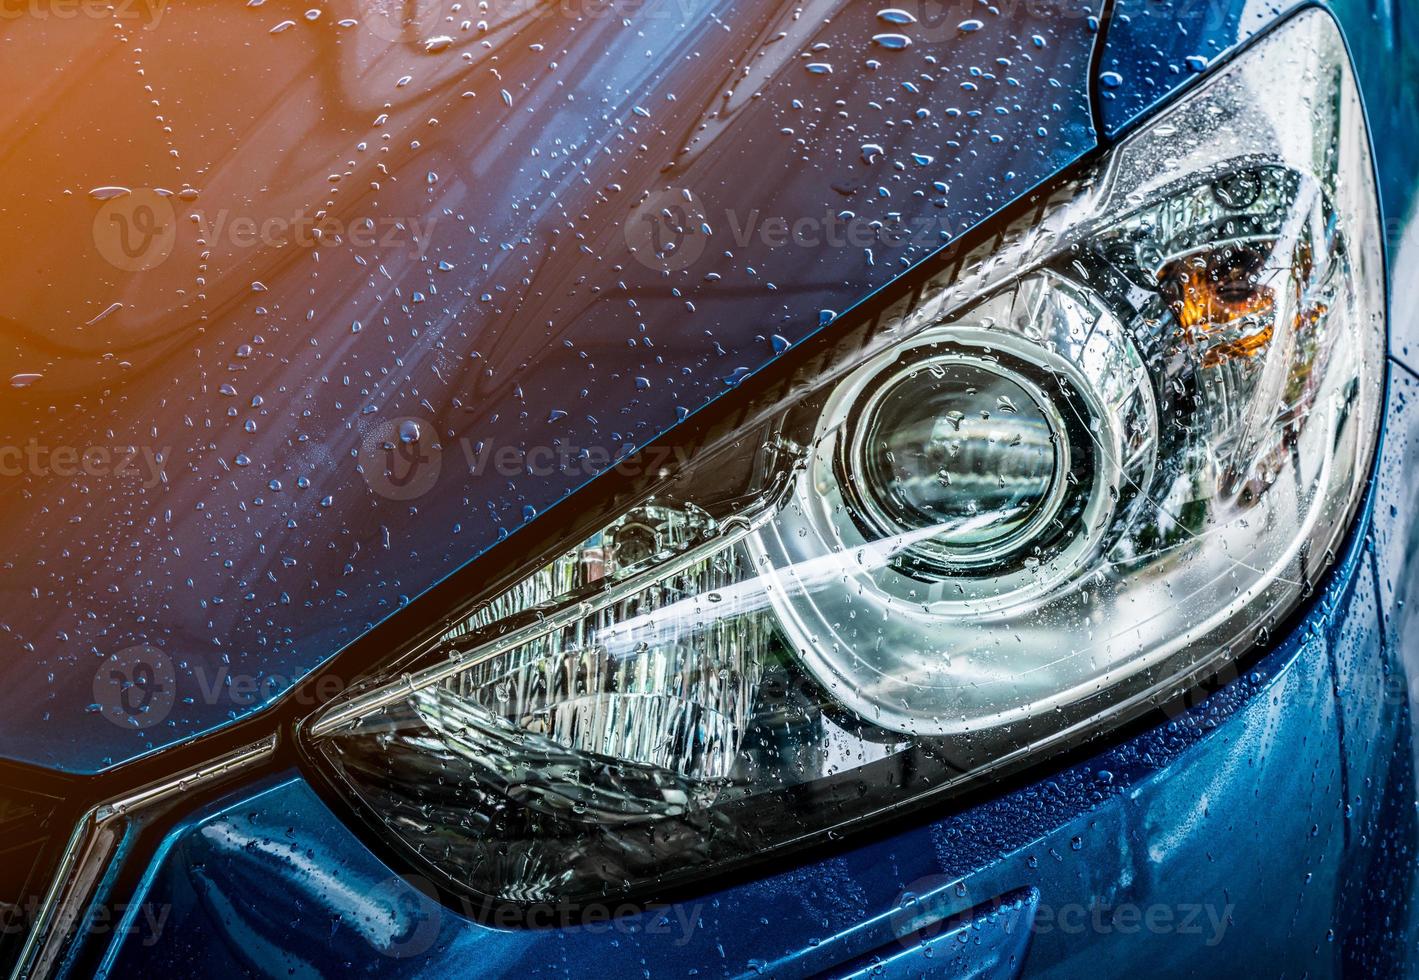 blaues kompaktes suv-auto mit sport und modernem design werden mit wasser gewaschen. Geschäftskonzept für den Autopflegedienst. Auto nach der Reinigung mit Hochdruckwasserspray mit Wassertropfen bedeckt foto